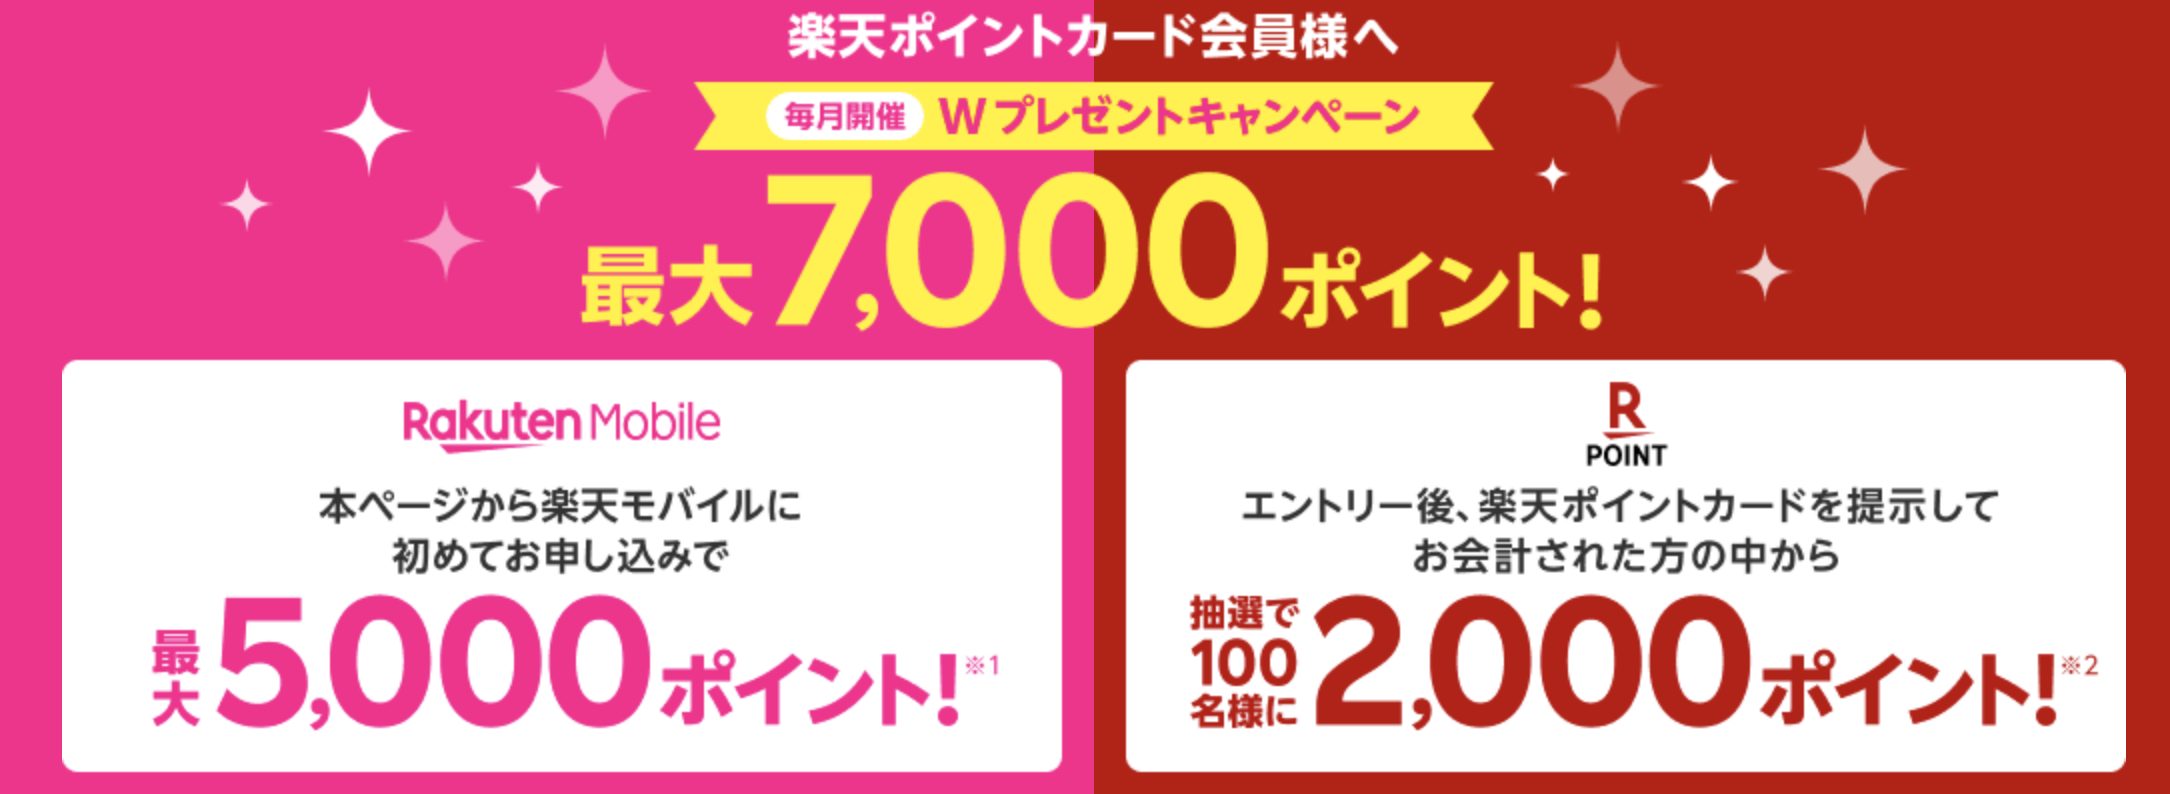 【毎月開催】楽天モバイル初めてのお申し込みで2,000ポイントプレゼントキャンペーン